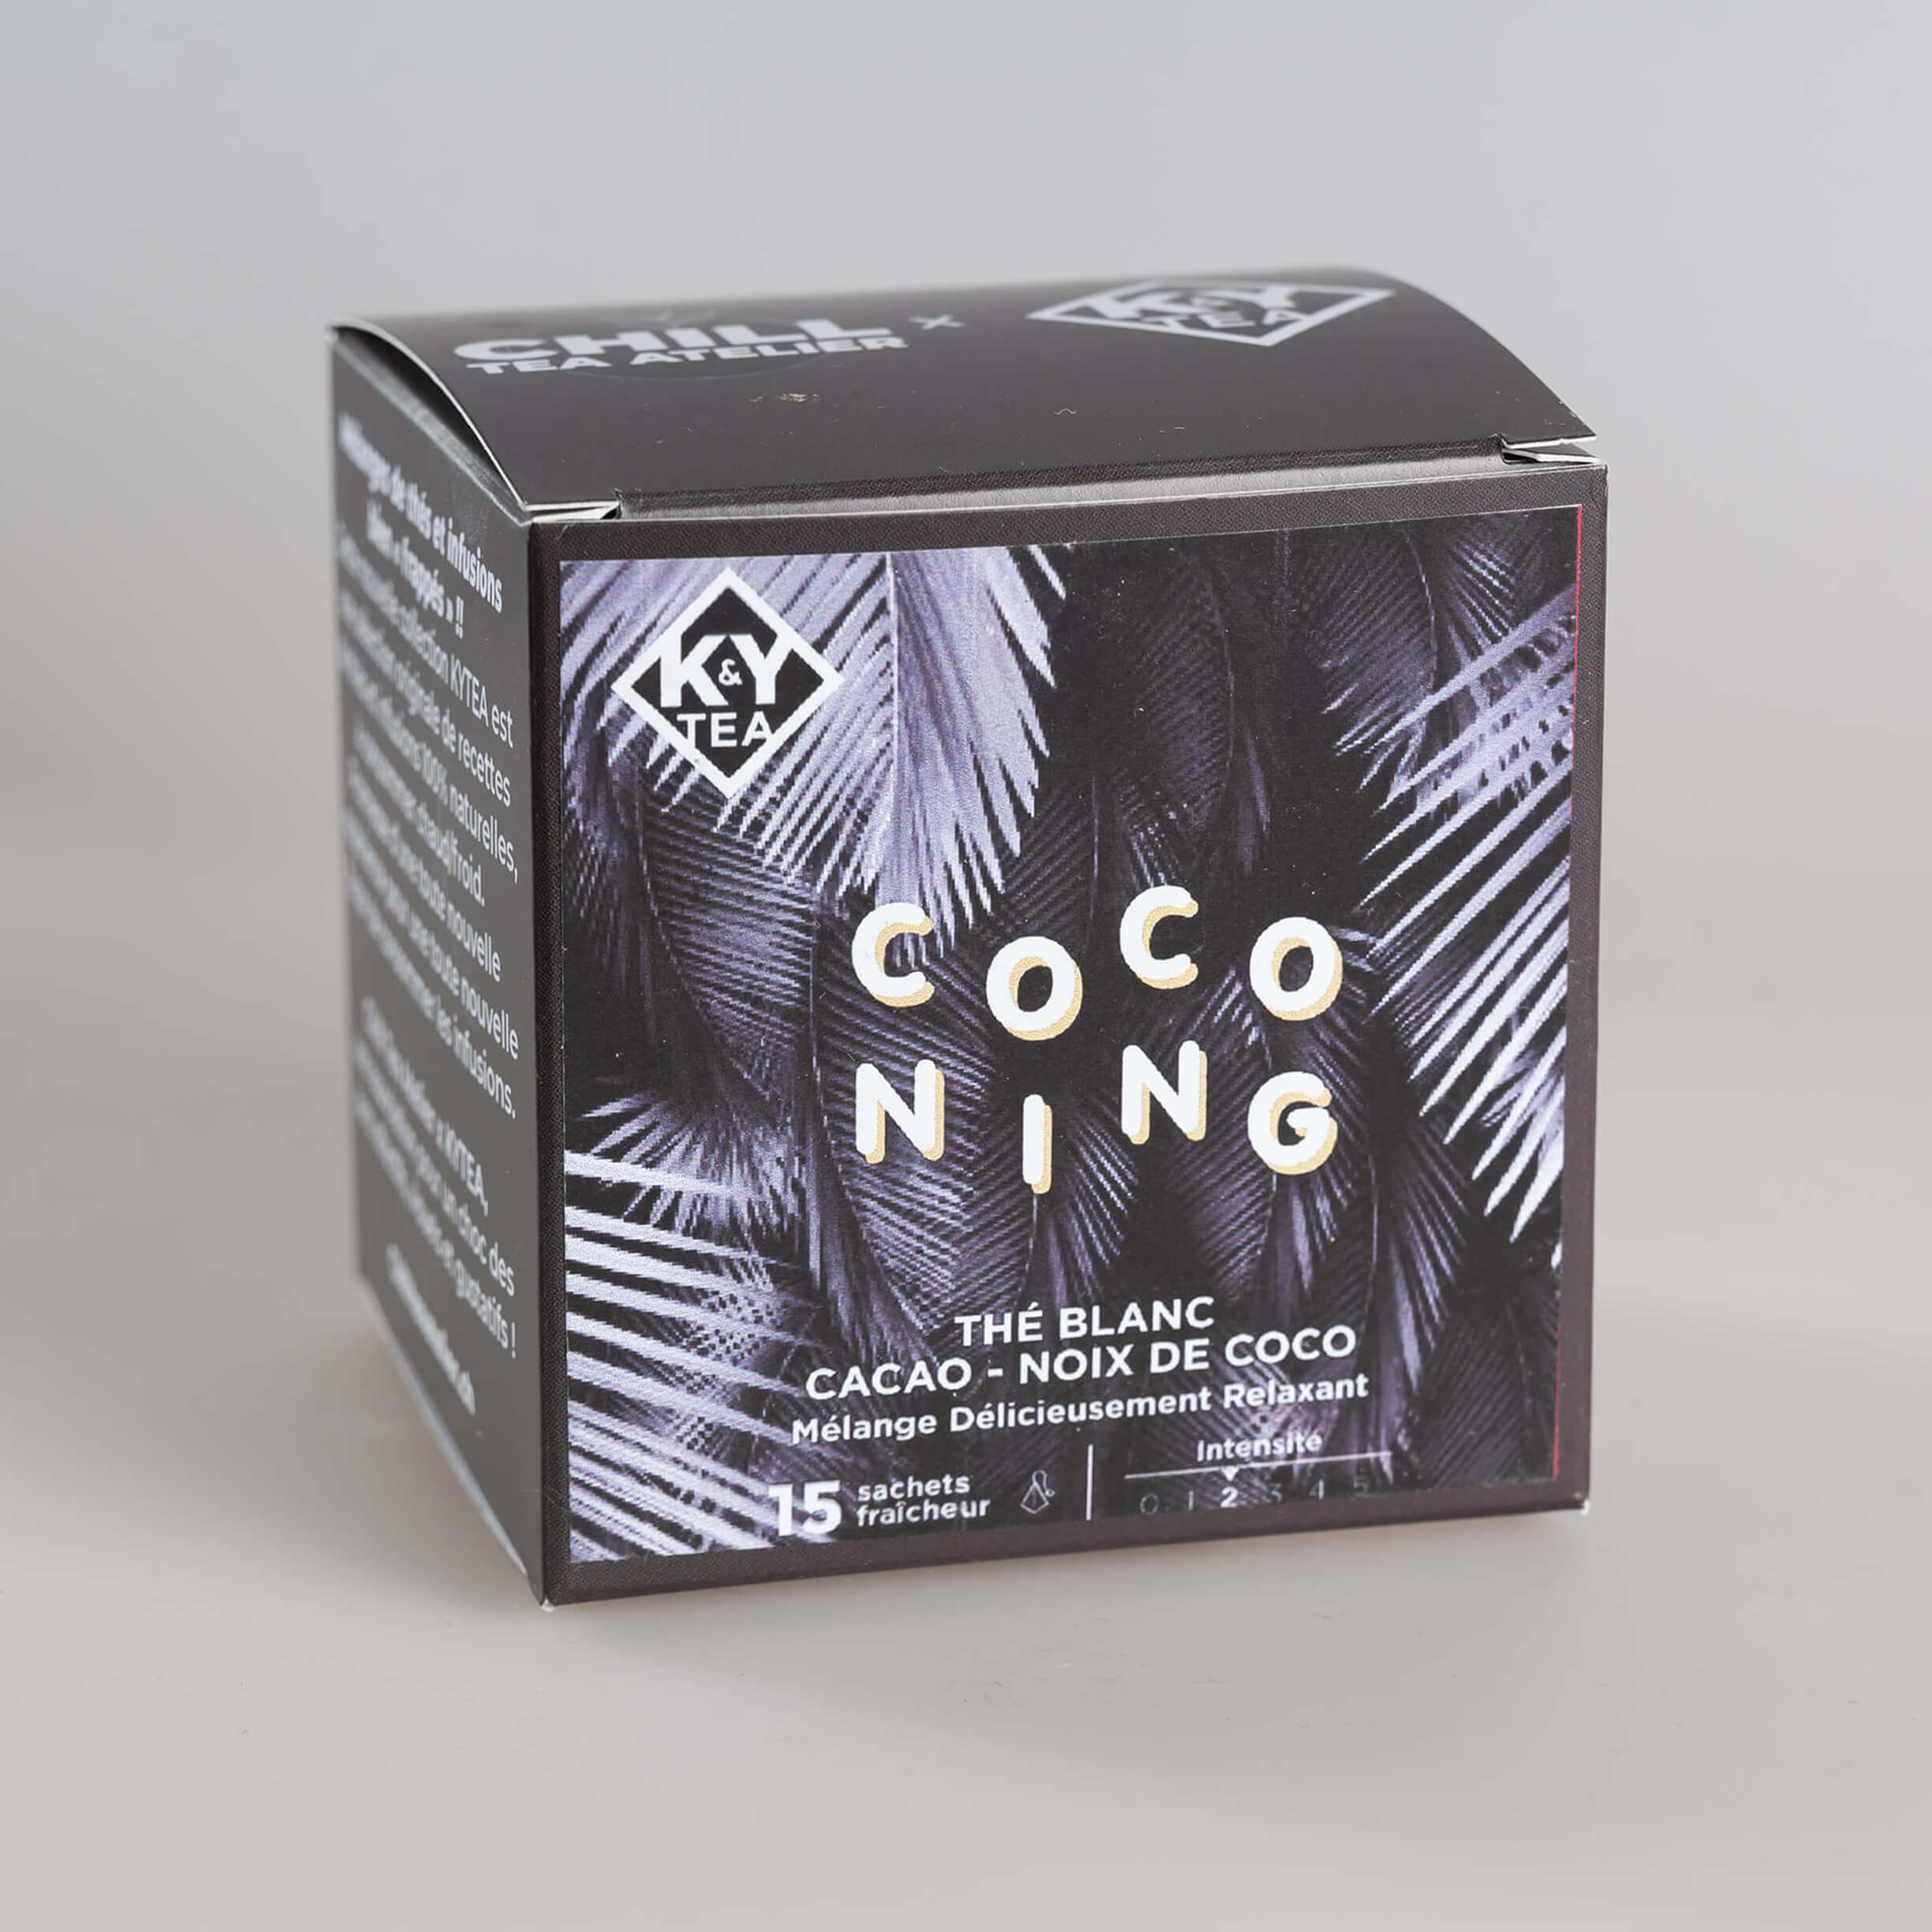 Coconing - Thé blanc coco cacao